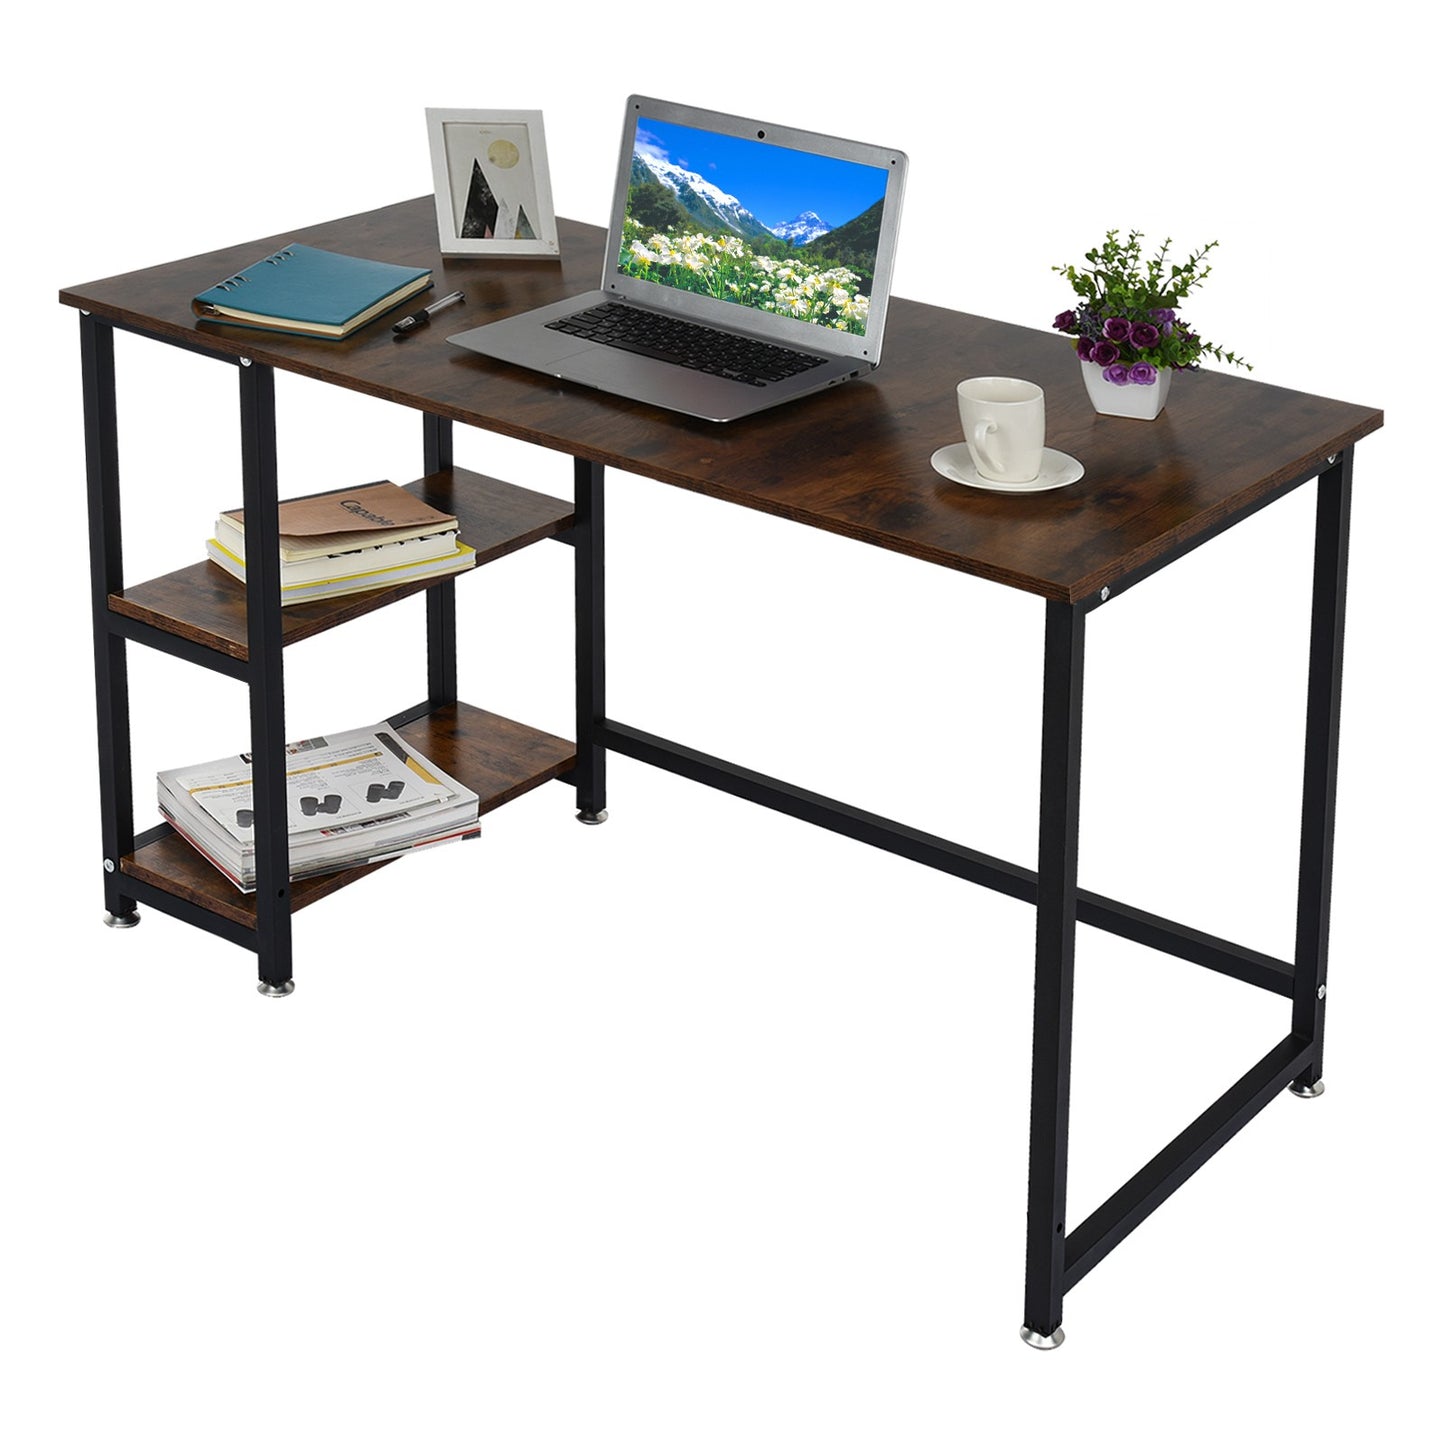 Home Desktop Computer Desk Bedroom Laptop Study Table Office Desk Workstation